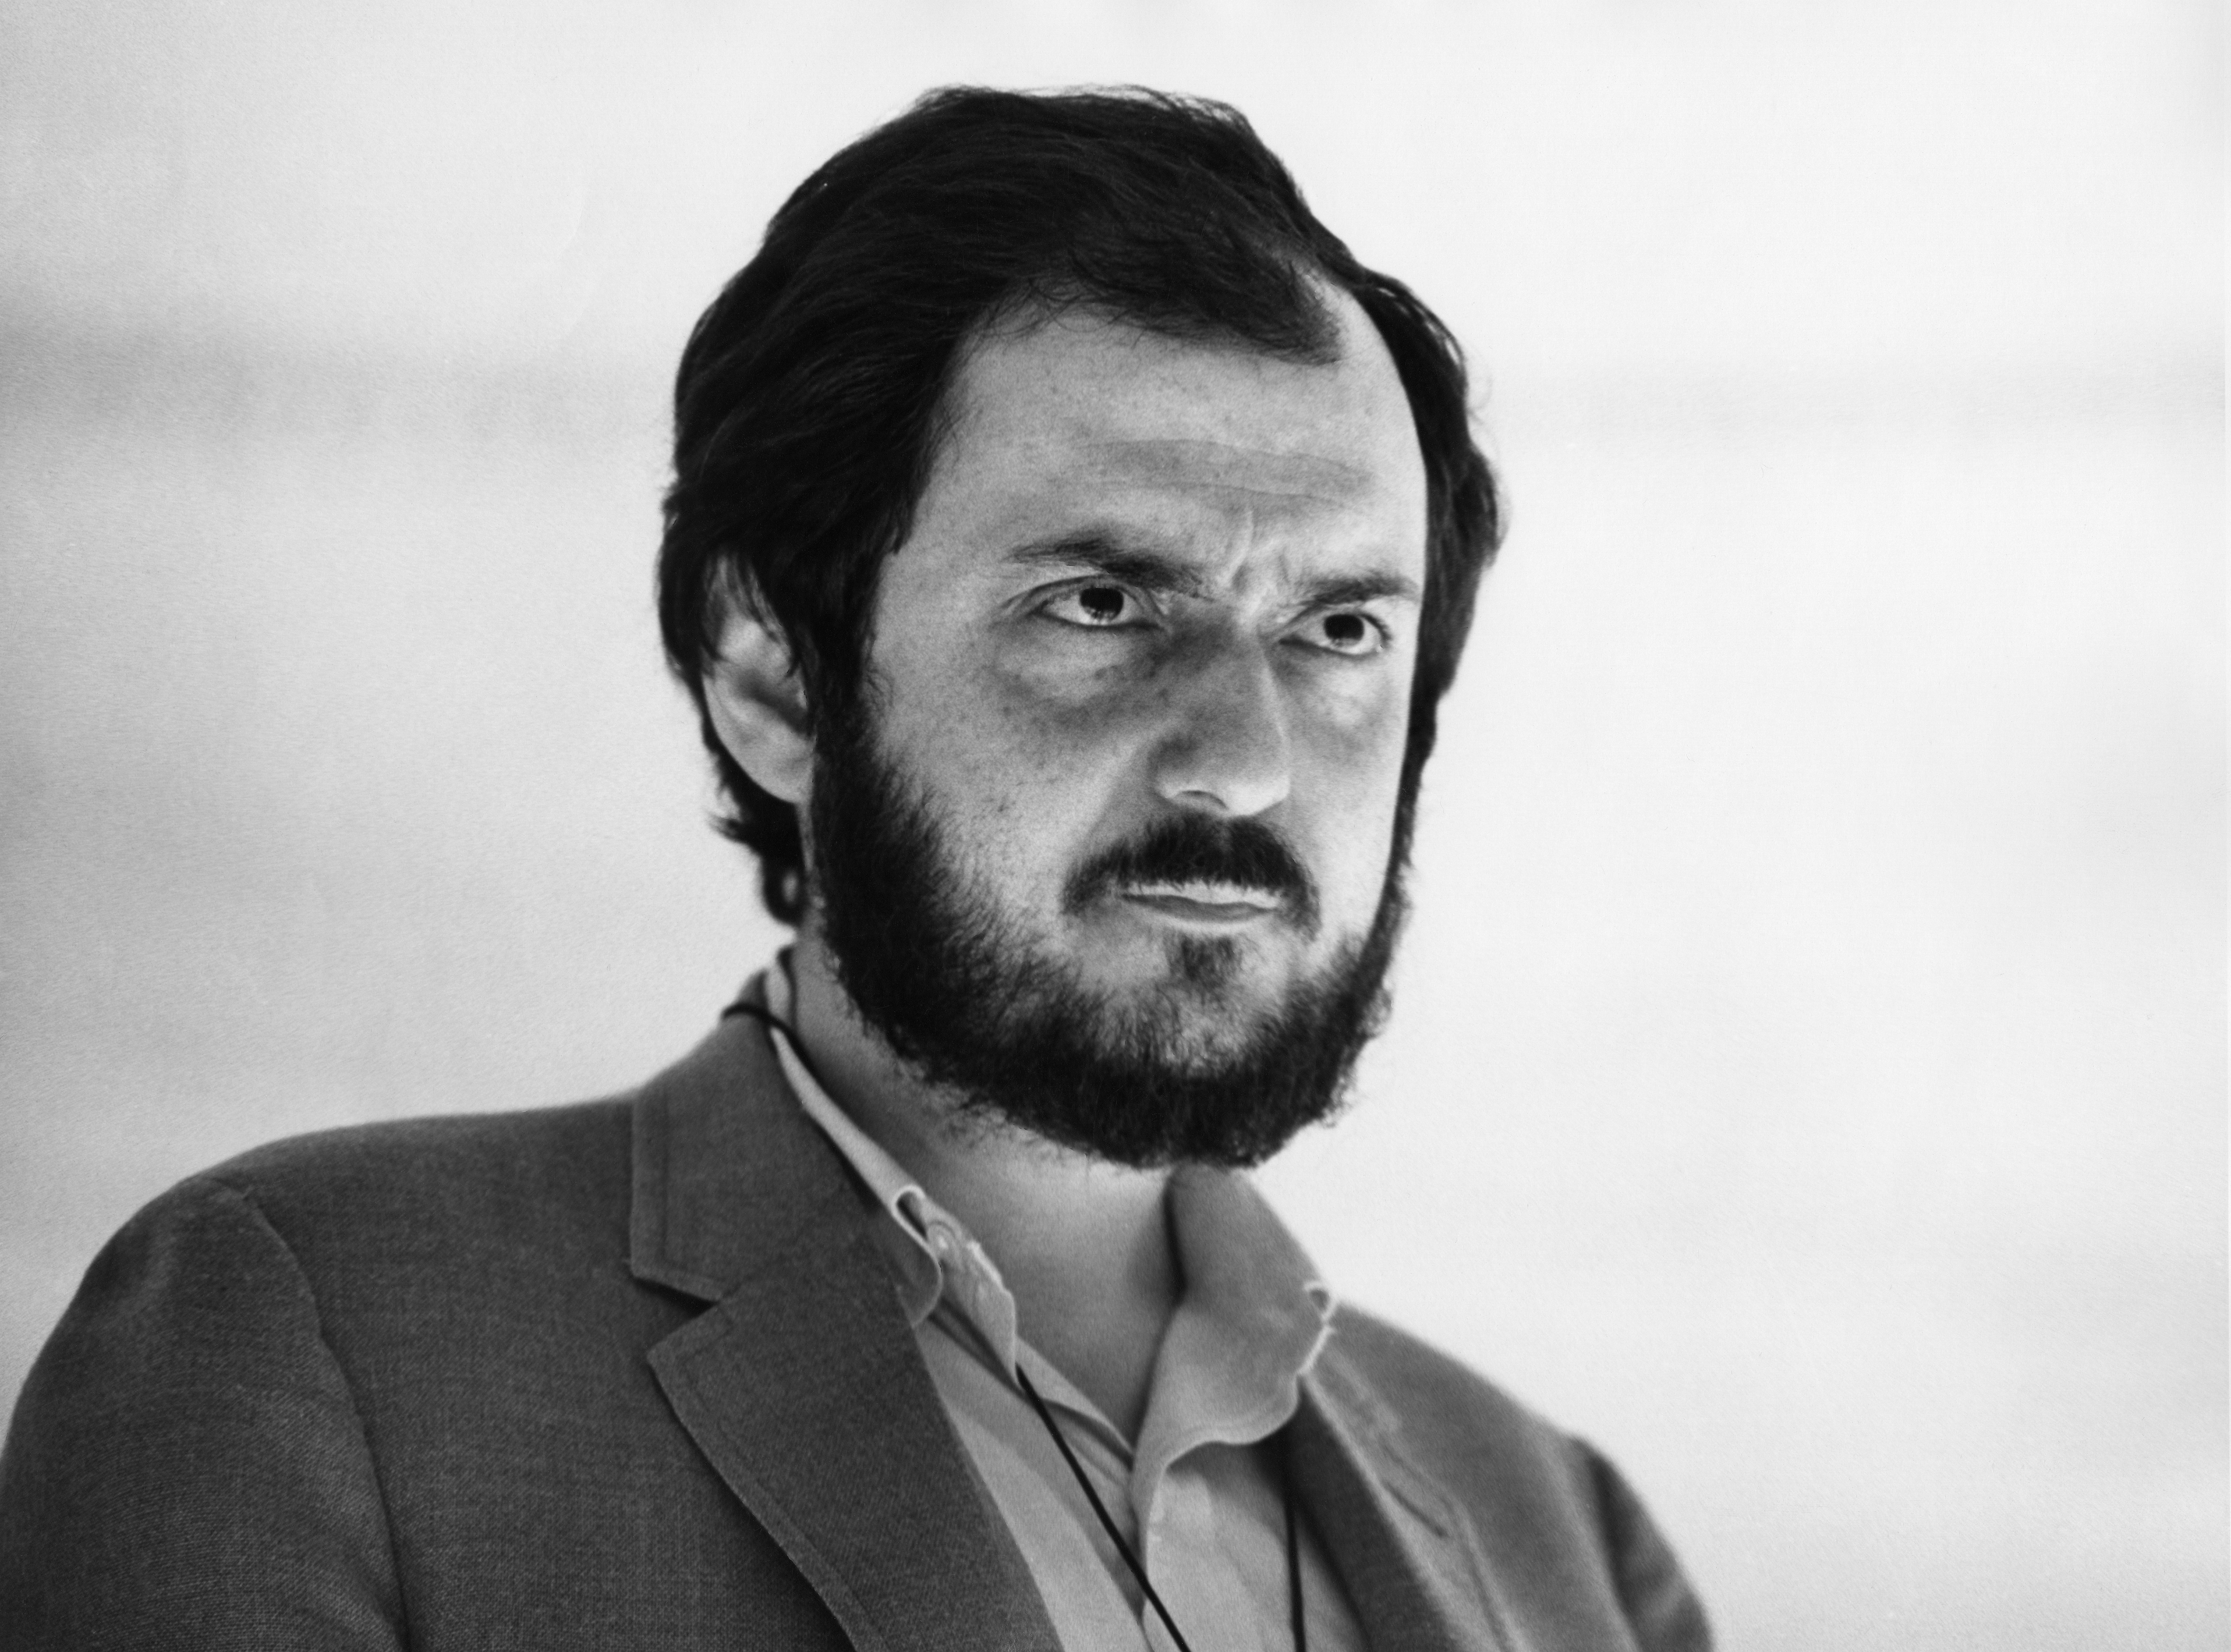 Стэнли Кубрик (Stanley Kubrick) биография, фильмы, спектакли, фото |  Afisha.ru